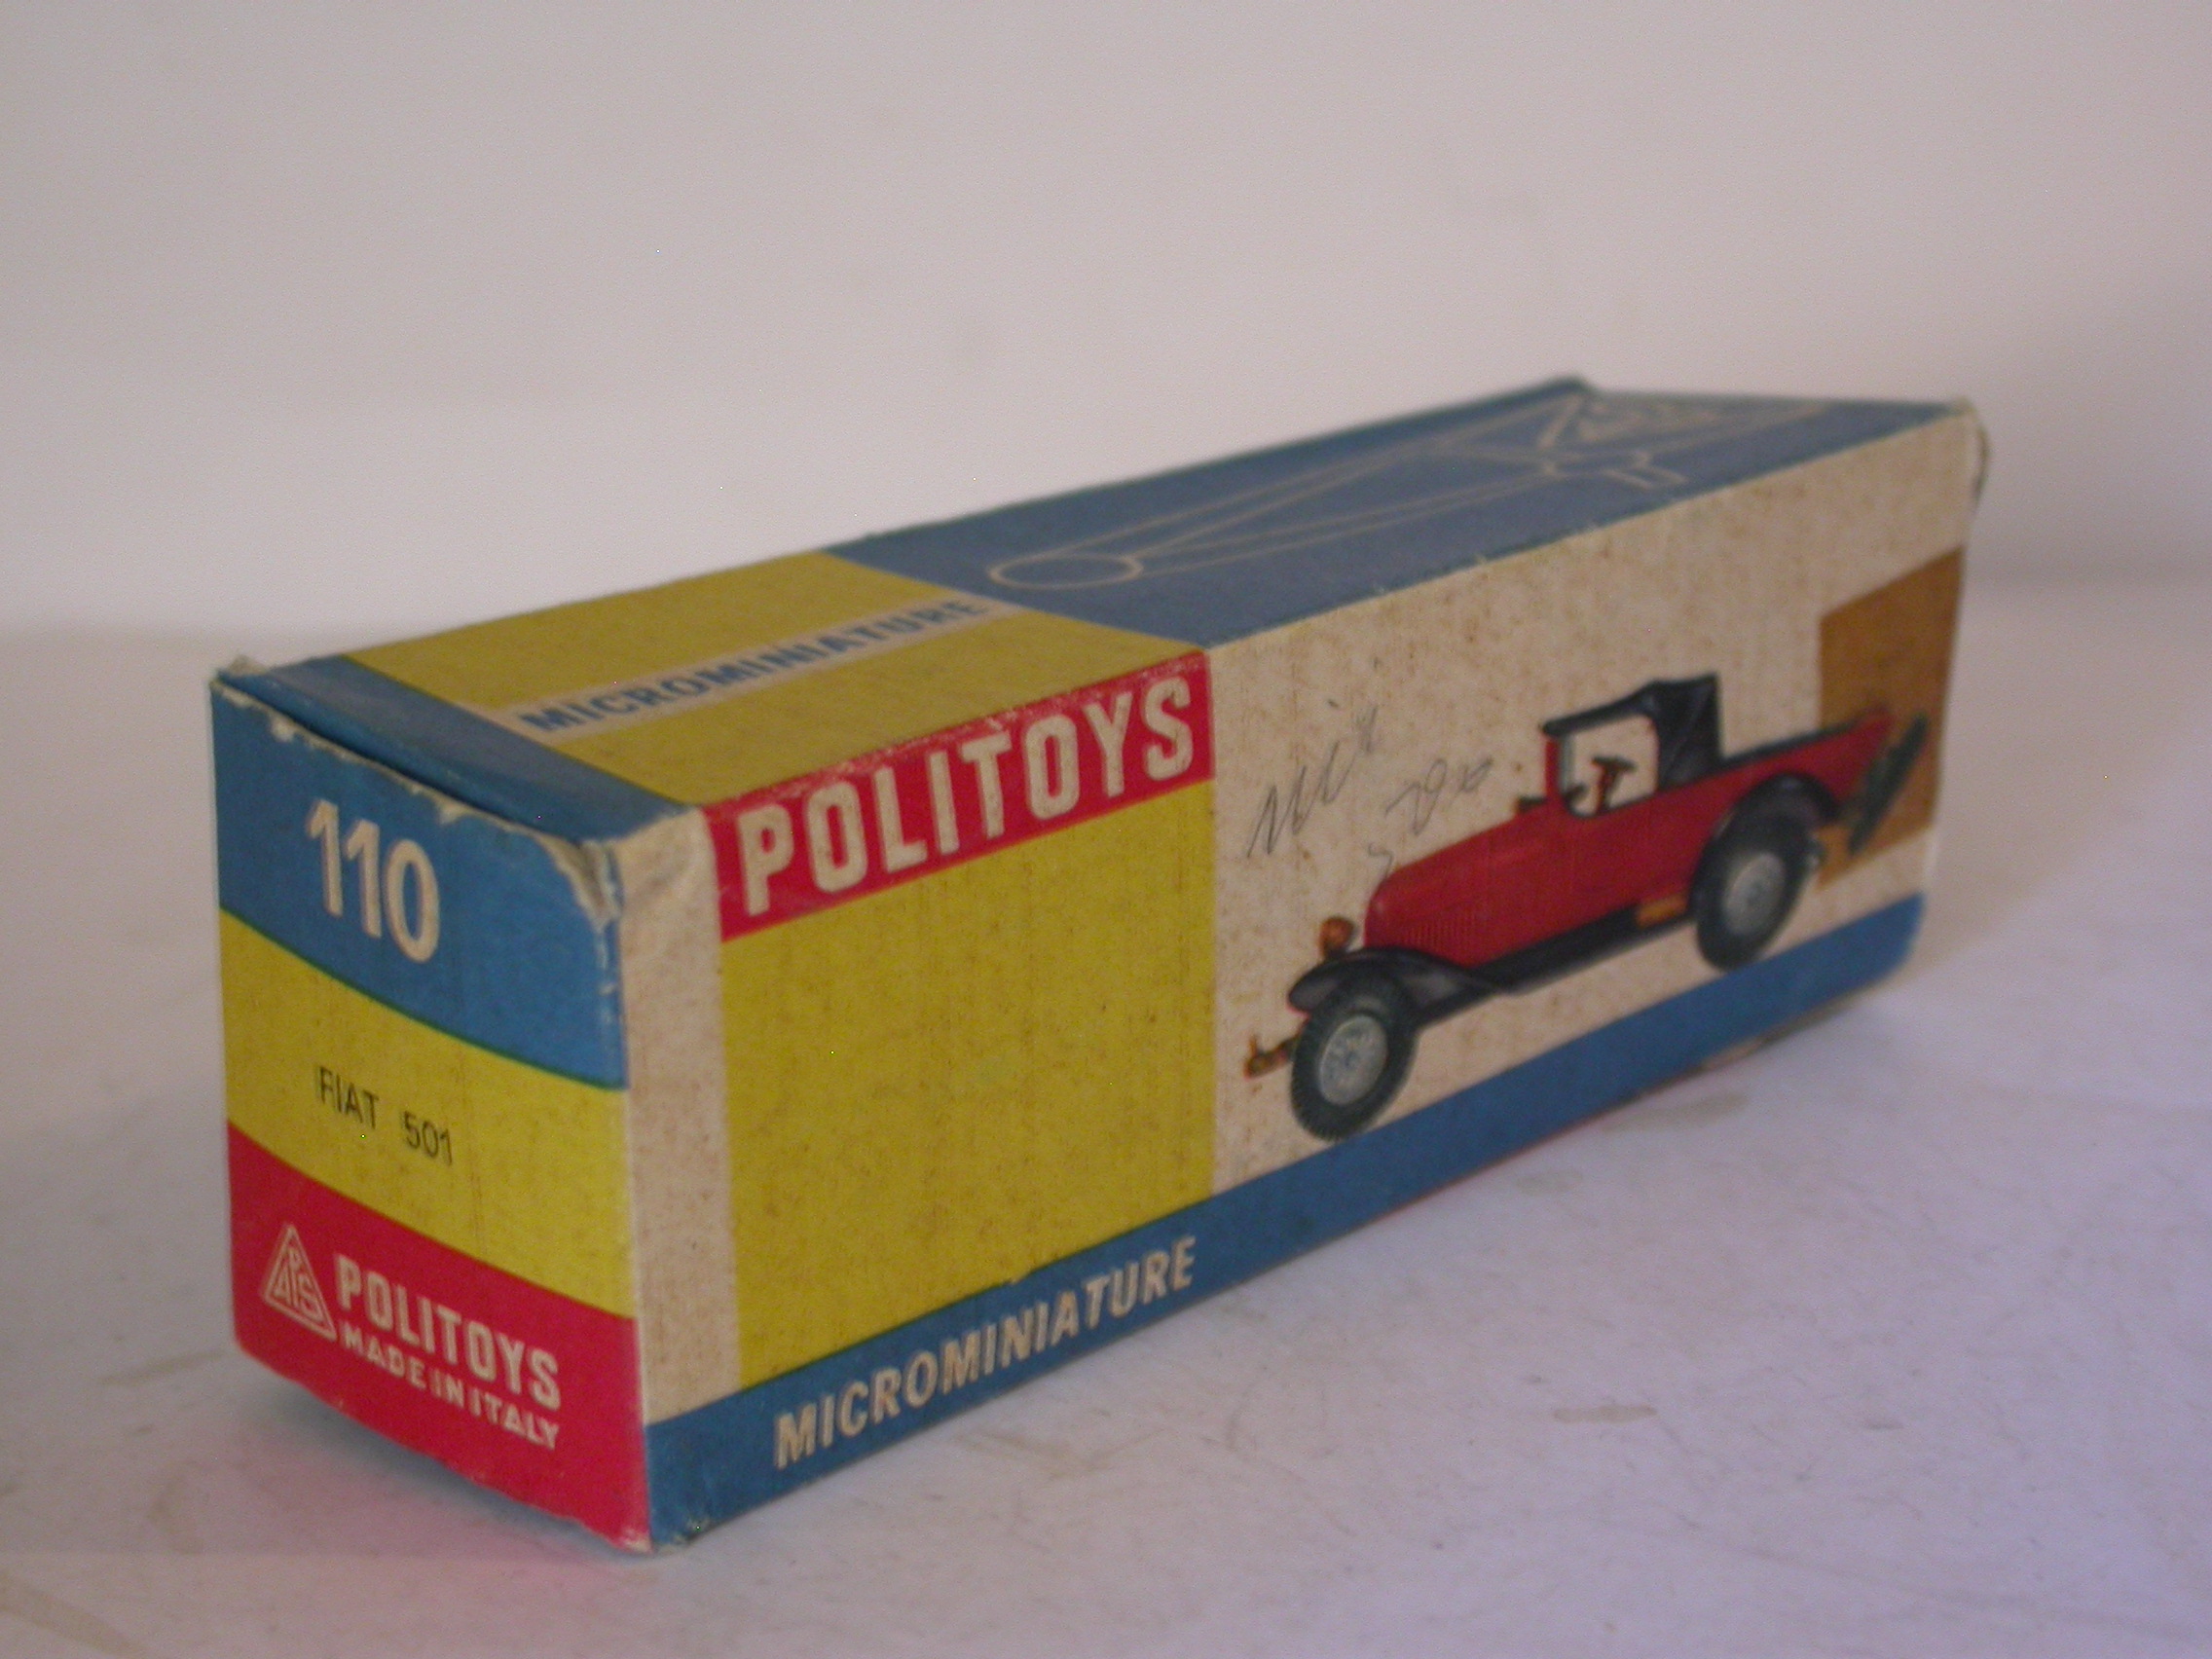 Politoys 501